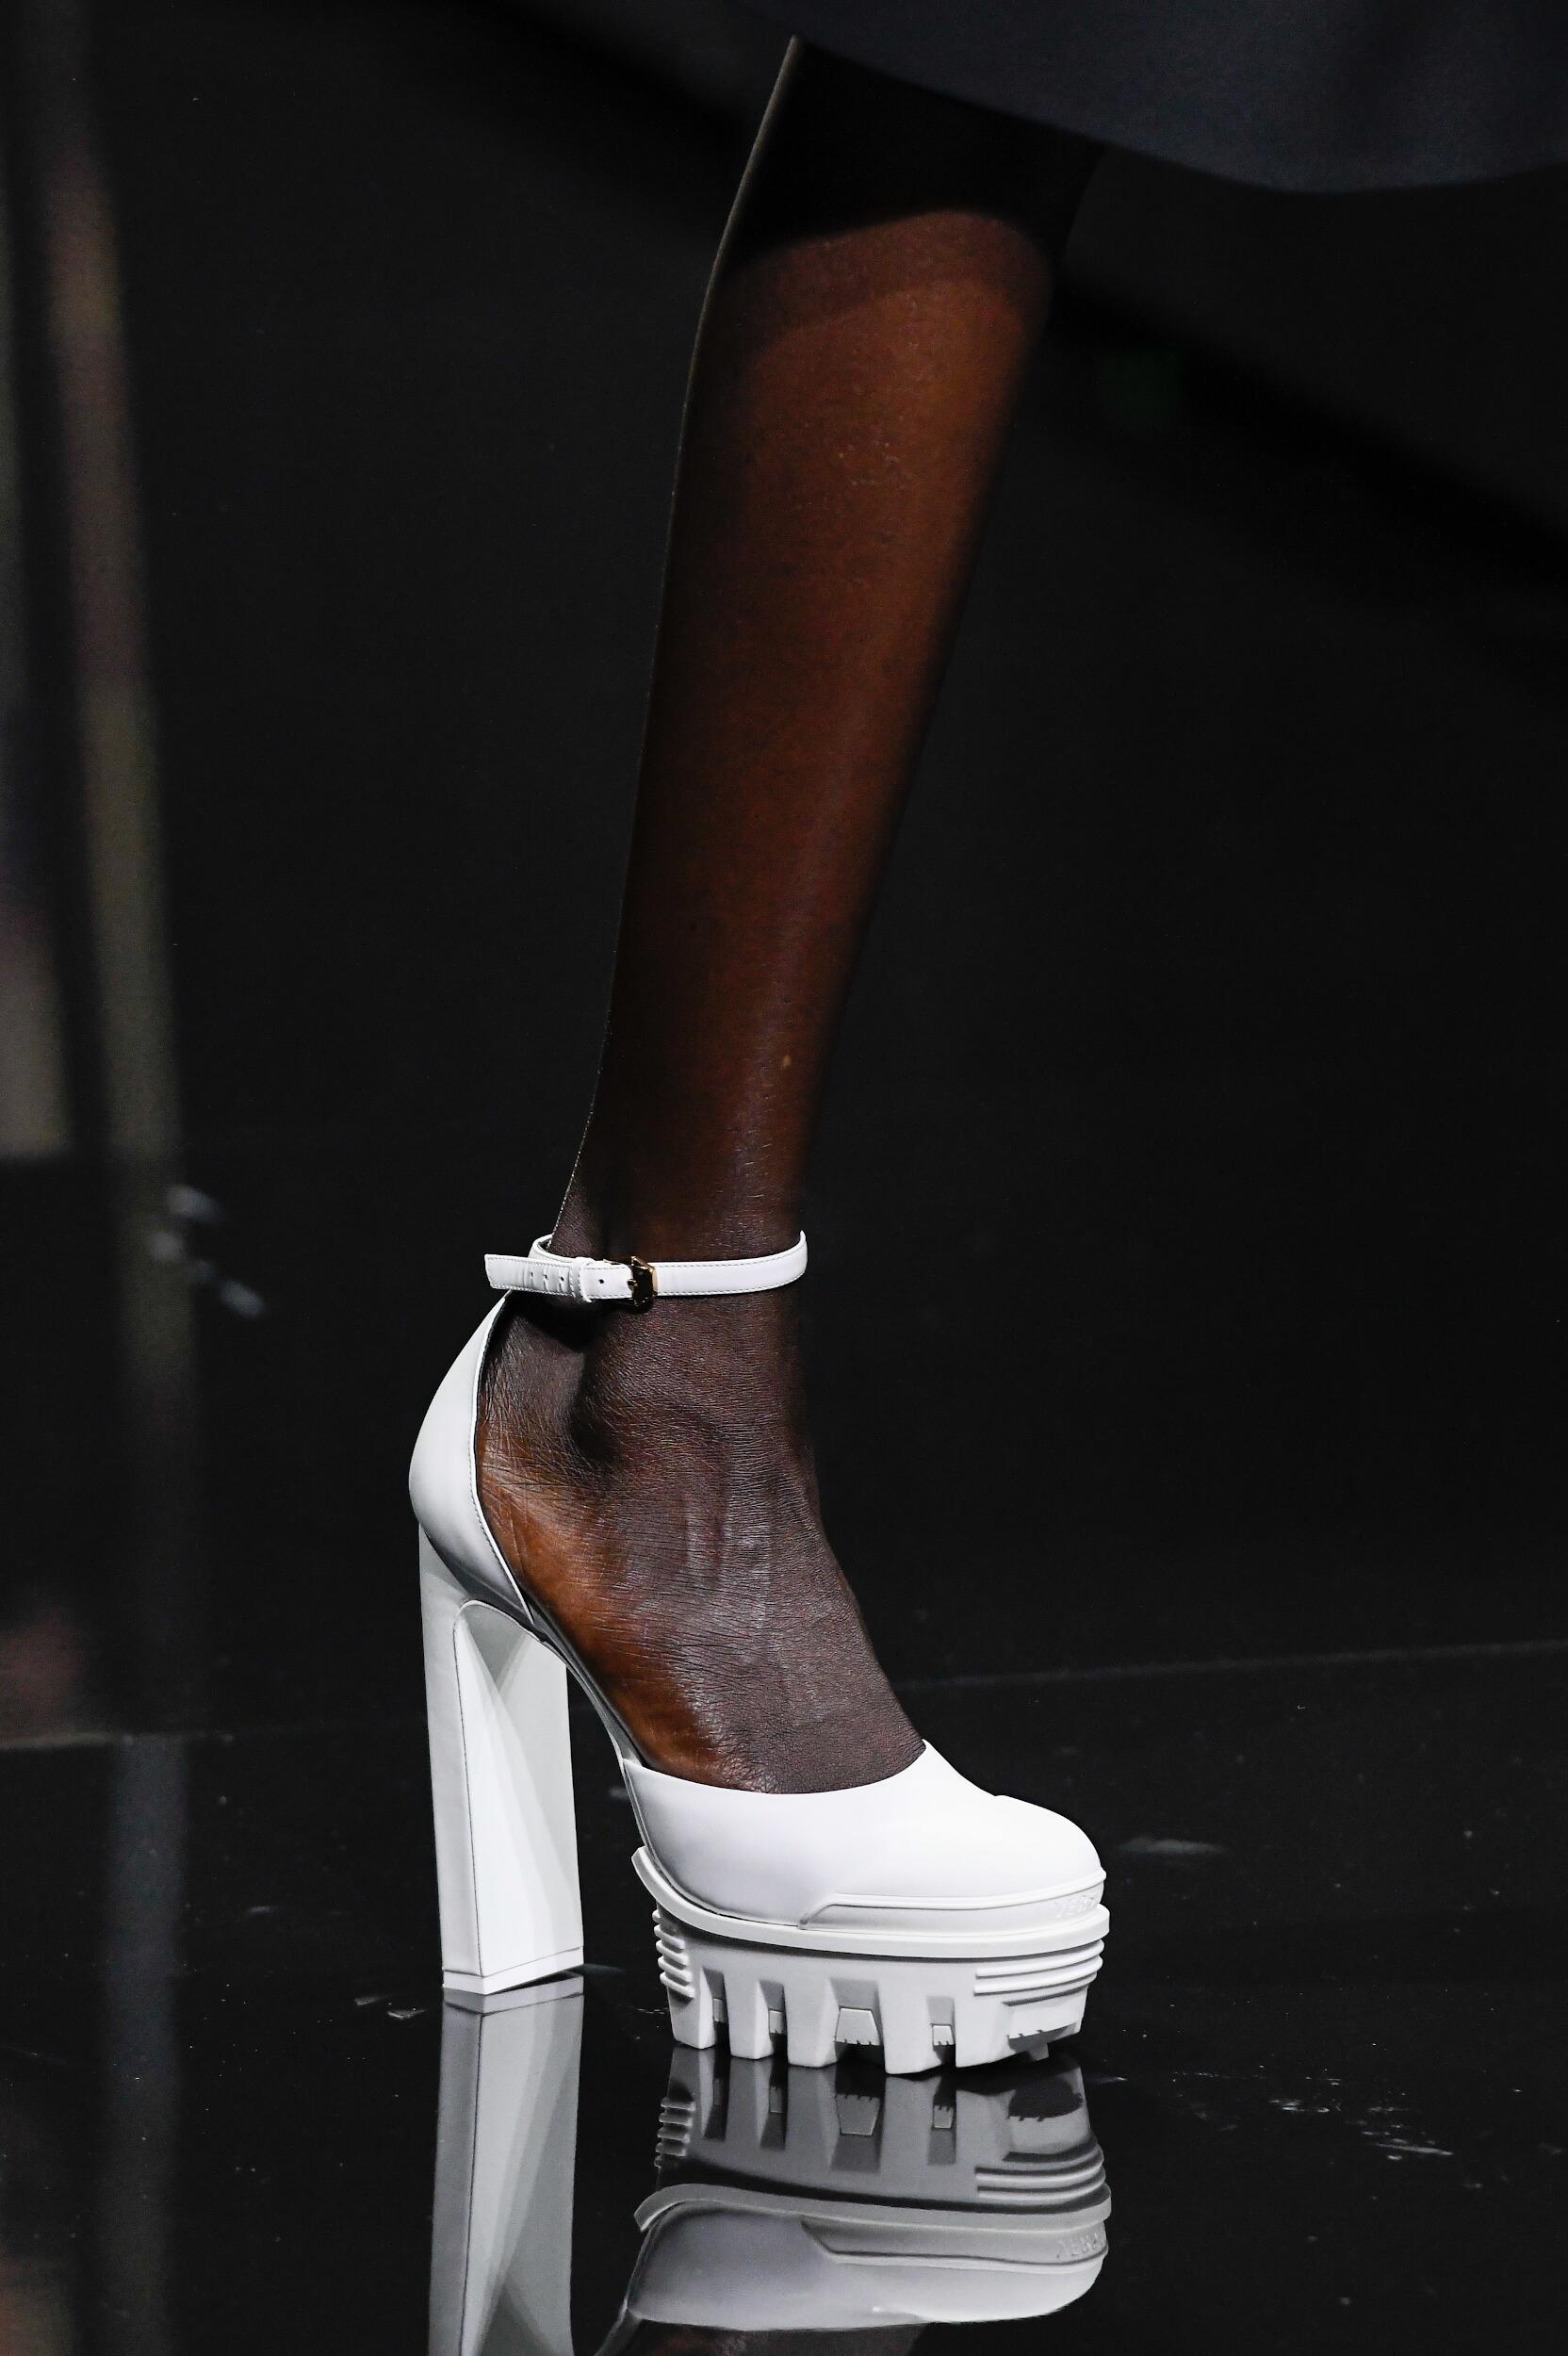 versace heels 2019